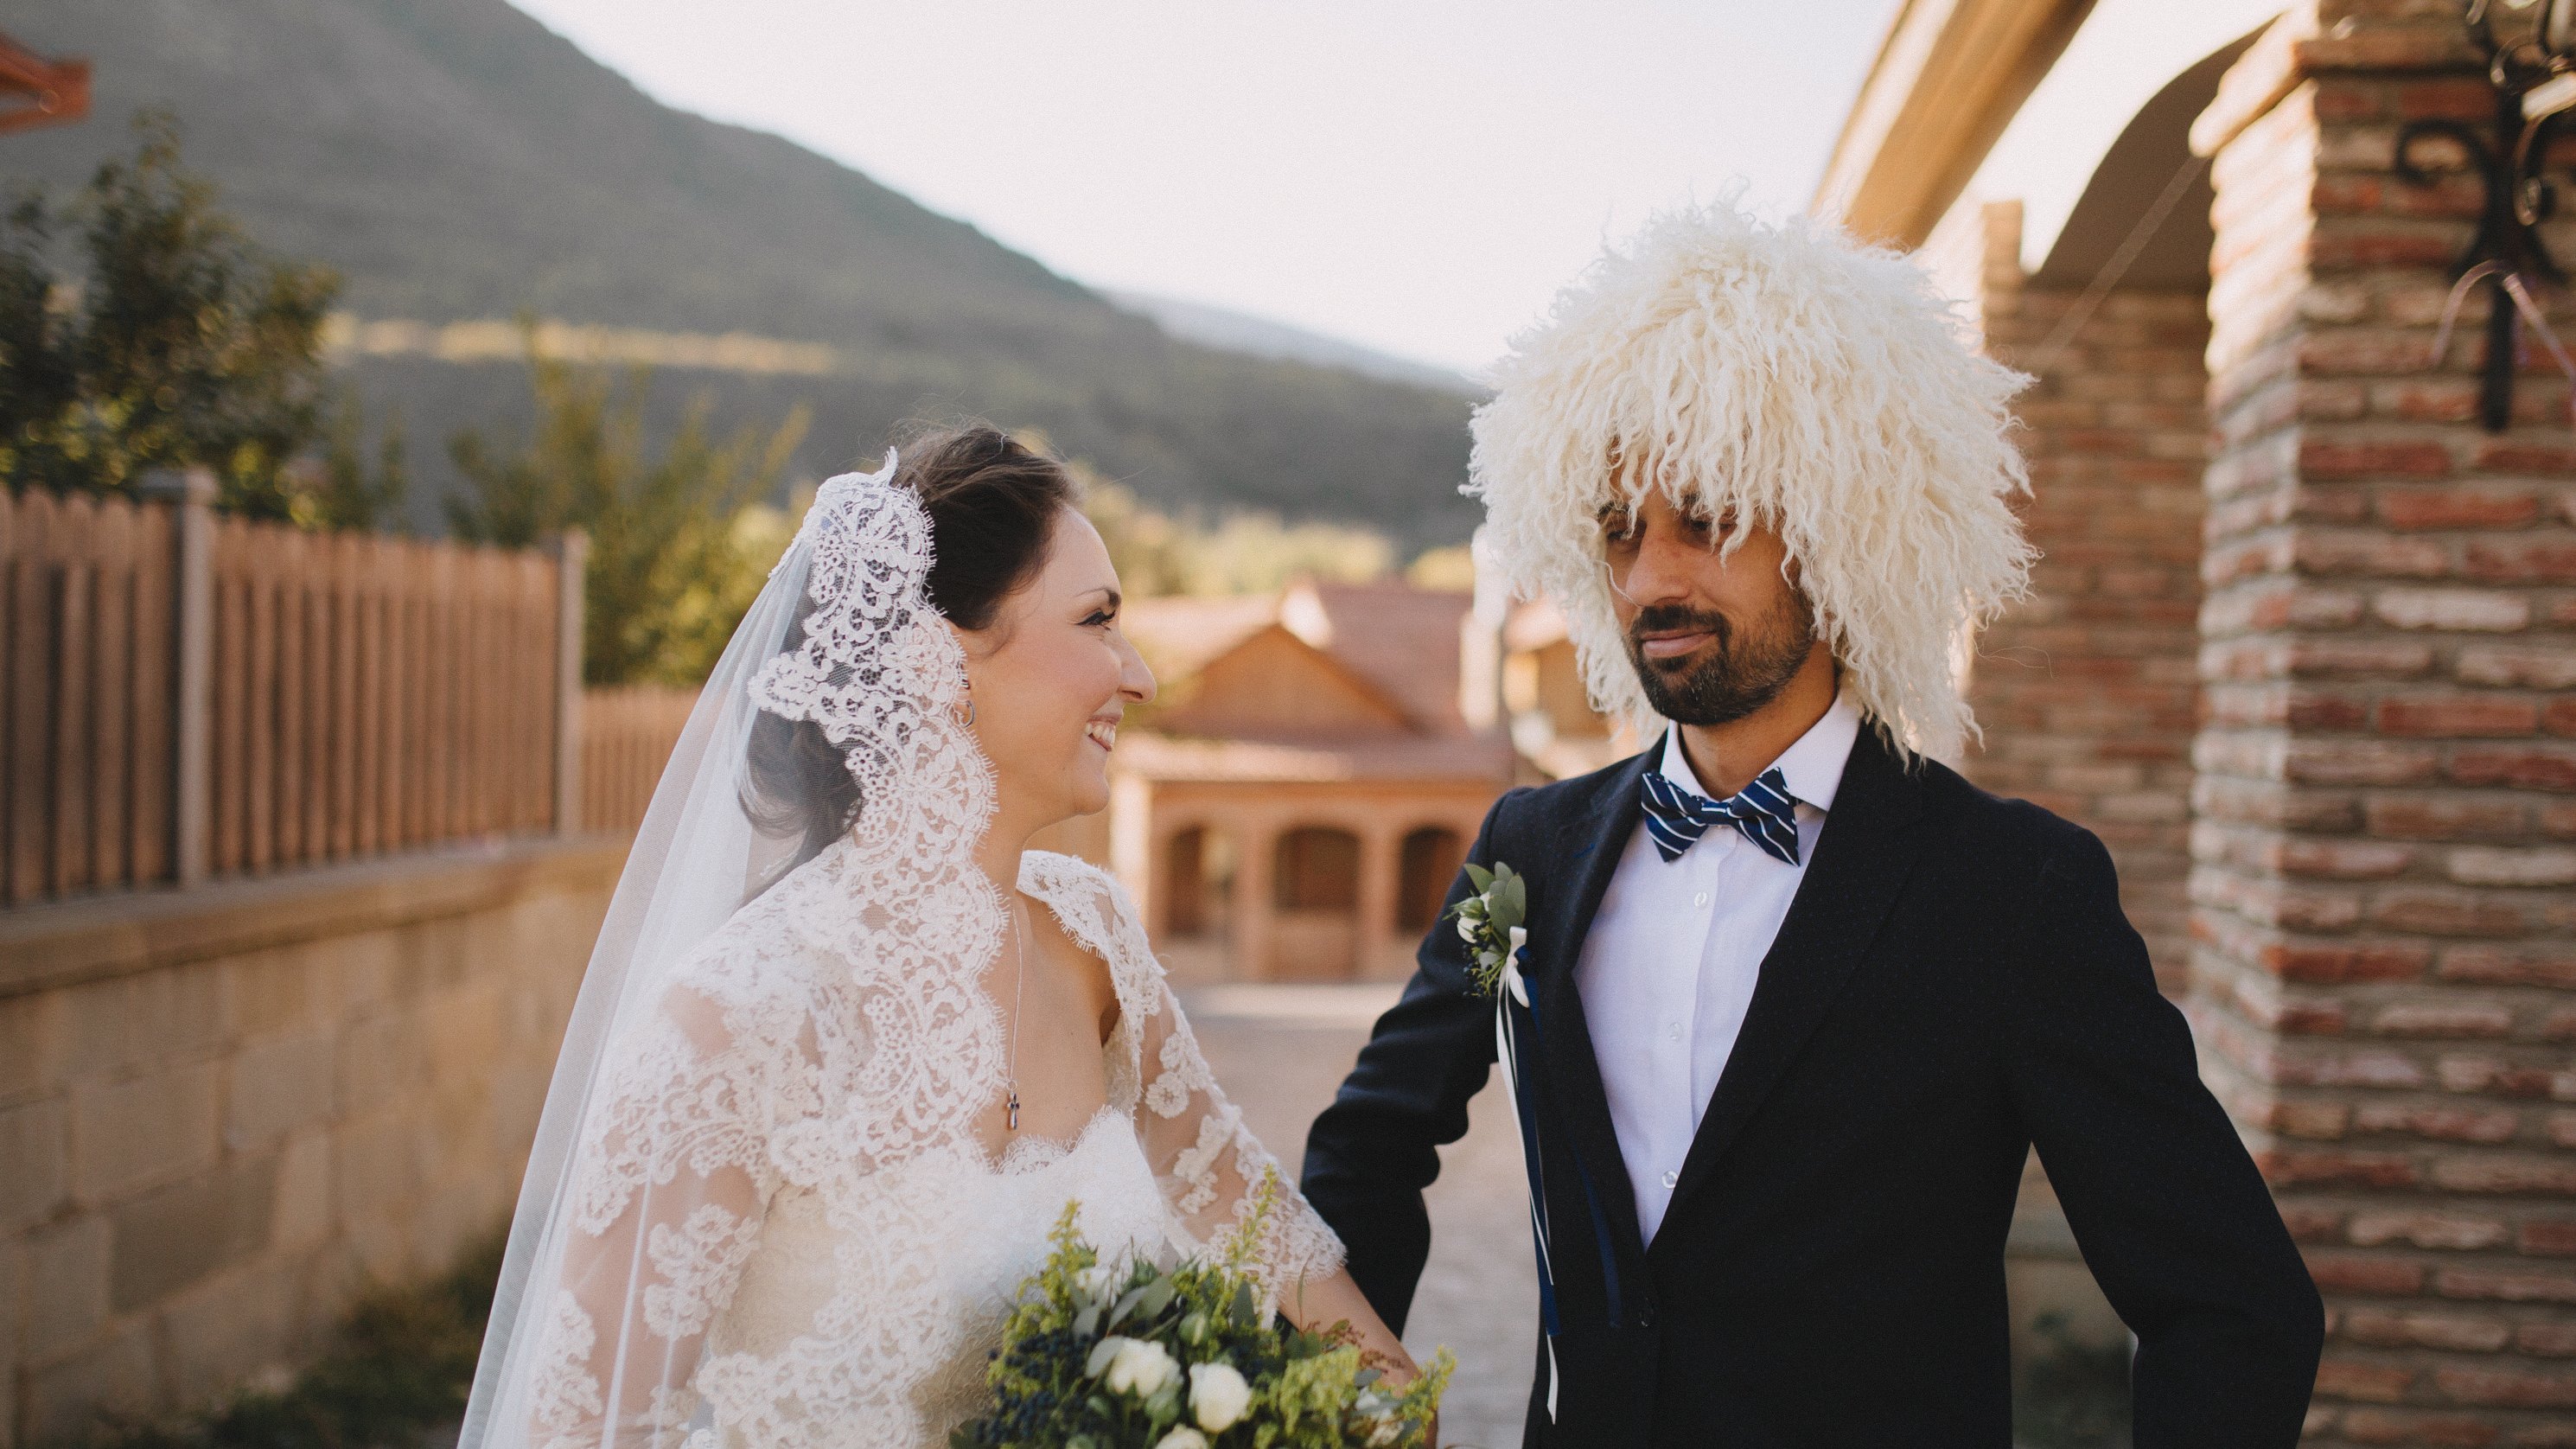 Русско-грузинские семьи о том, как жить в интернациональном браке | стиль жизни  на weproject